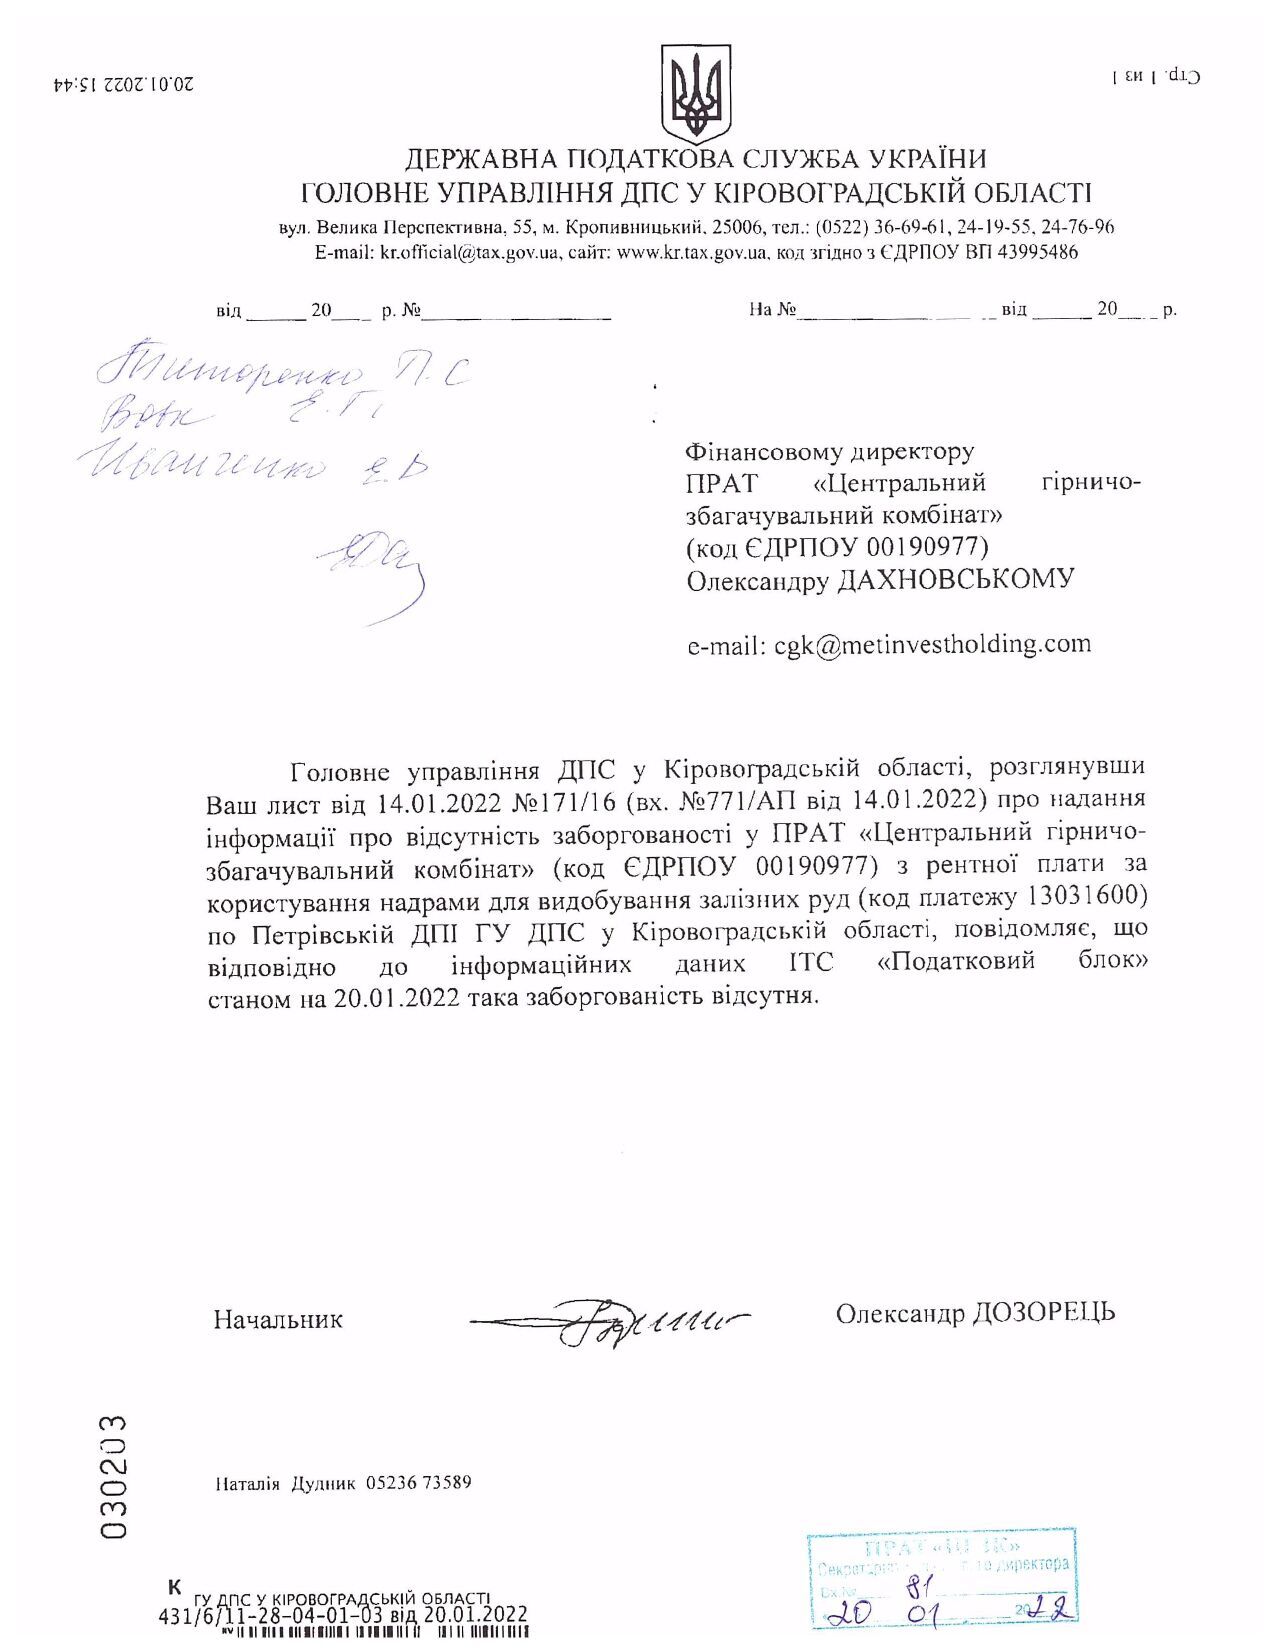 Документы об отсутствии задолженности на предприятиях "Метинвеста"